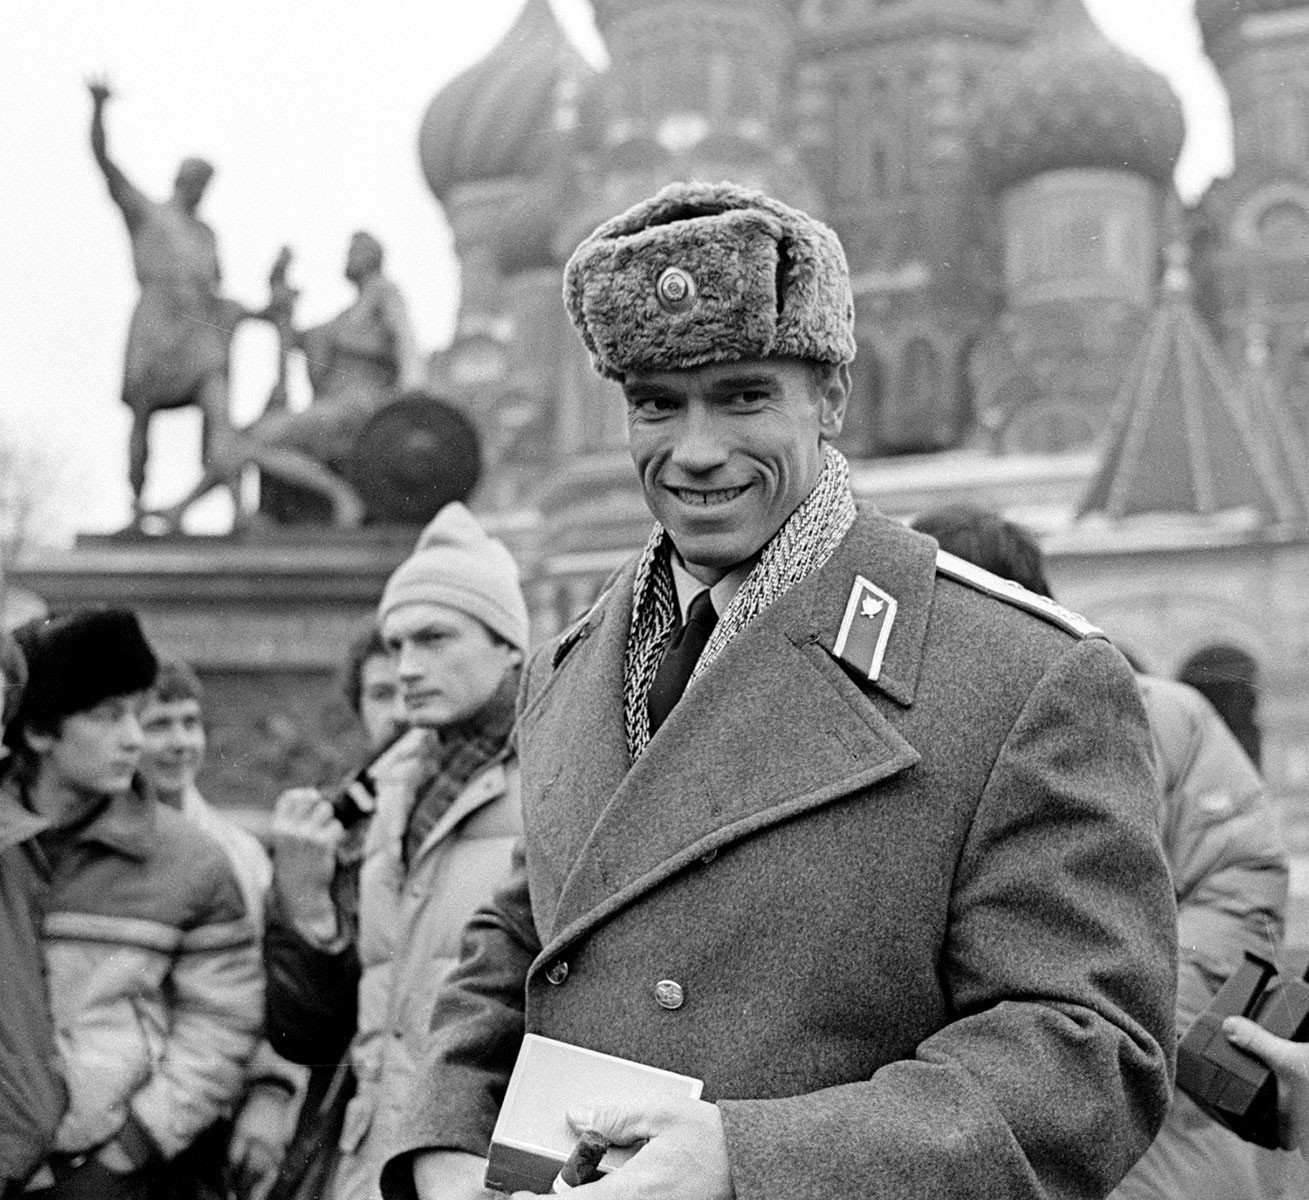 1988 trug Arnold Schwarzenegger die Uniform eines sowjetischen Polizisten auf dem Roten Platz, als sie dort den Film Red Heat drehten.